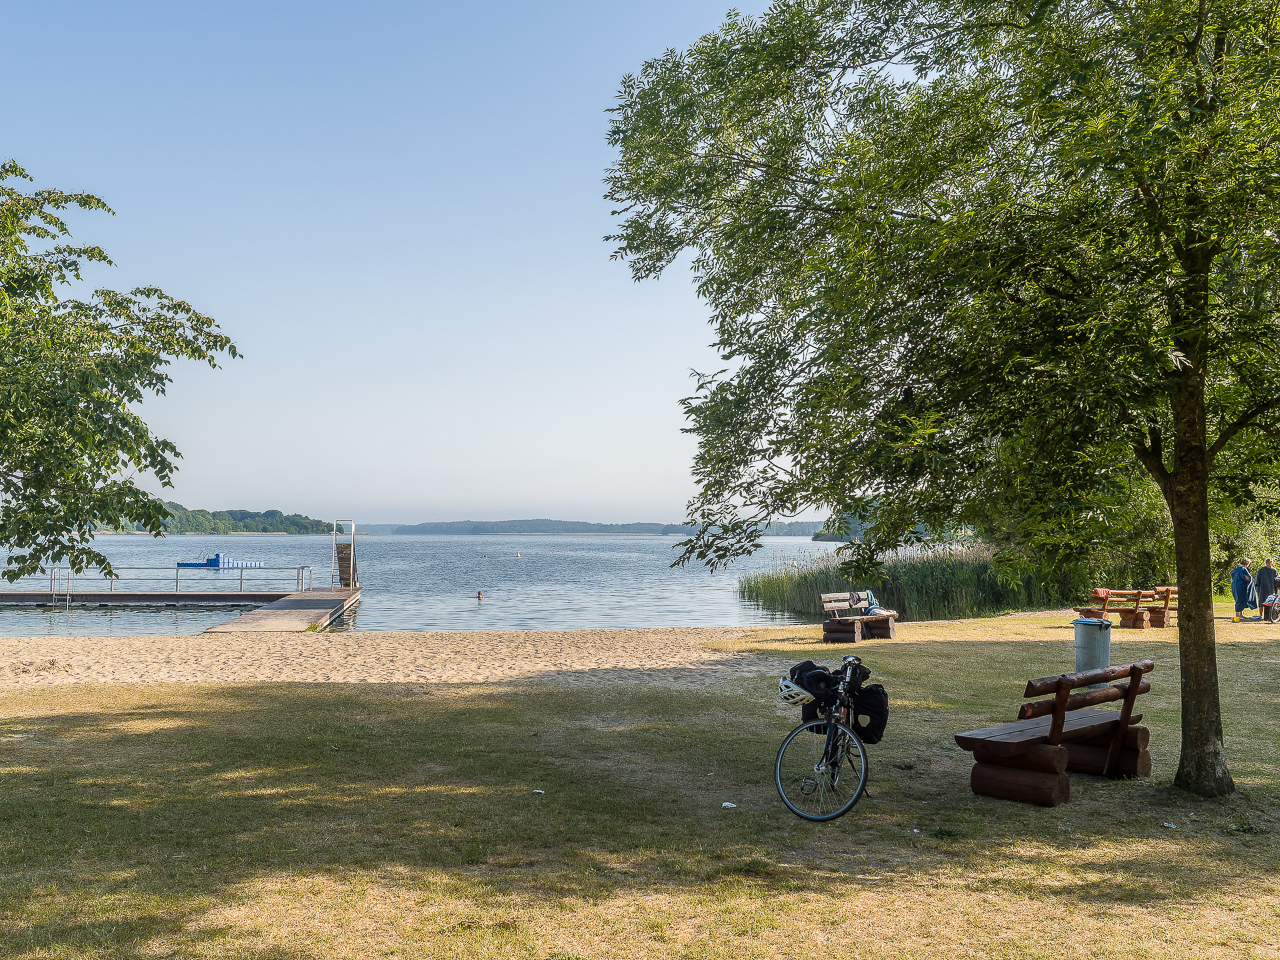 Ein StrandBad an einem See, Steg und Rutsche ins Wasser, im Vordergrund eine schattige SitzBank unter einem Baum